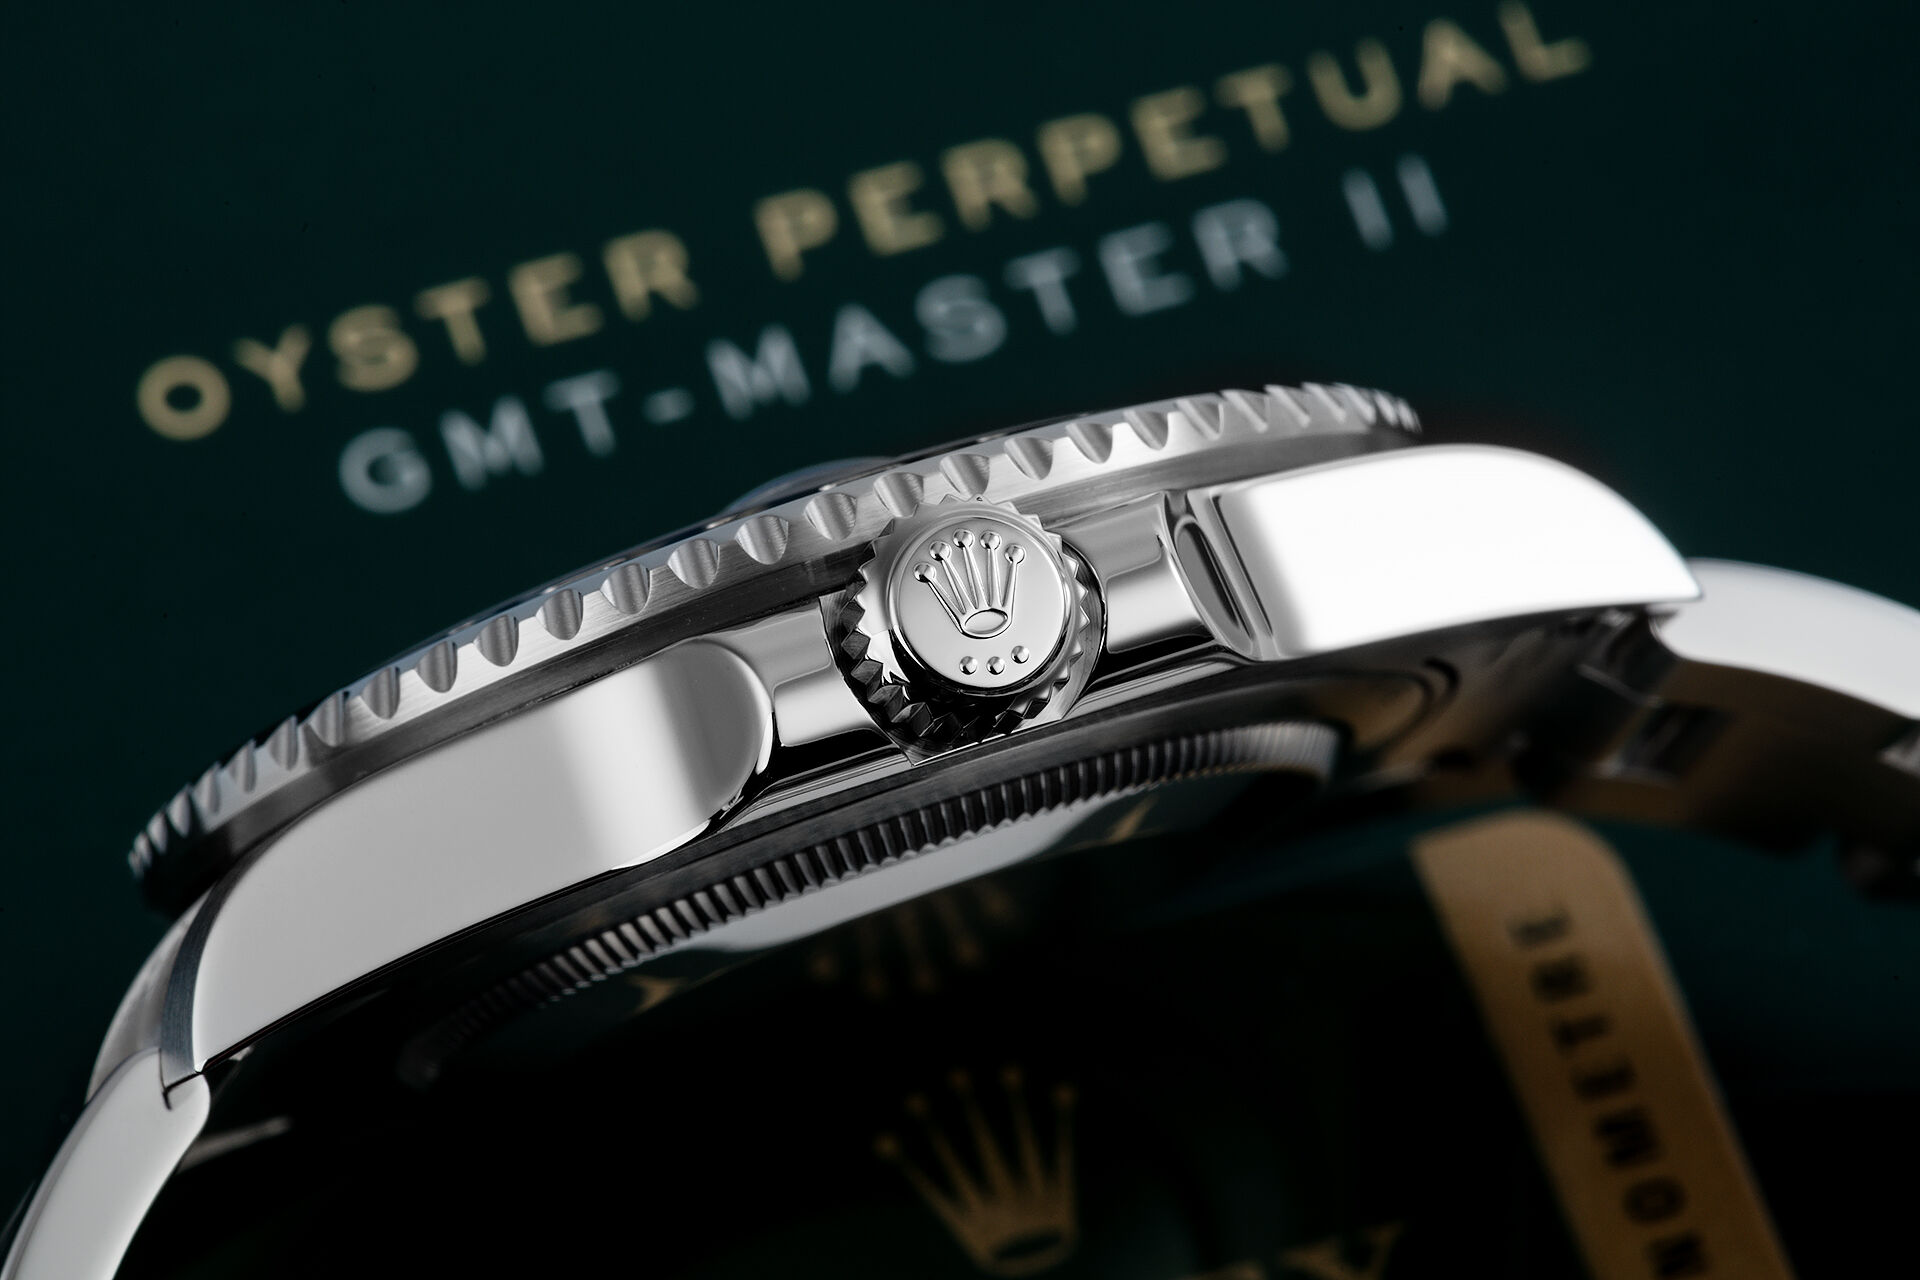 ref 116710BLNR | UK Retailed - Full Set | Rolex GMT-Master II